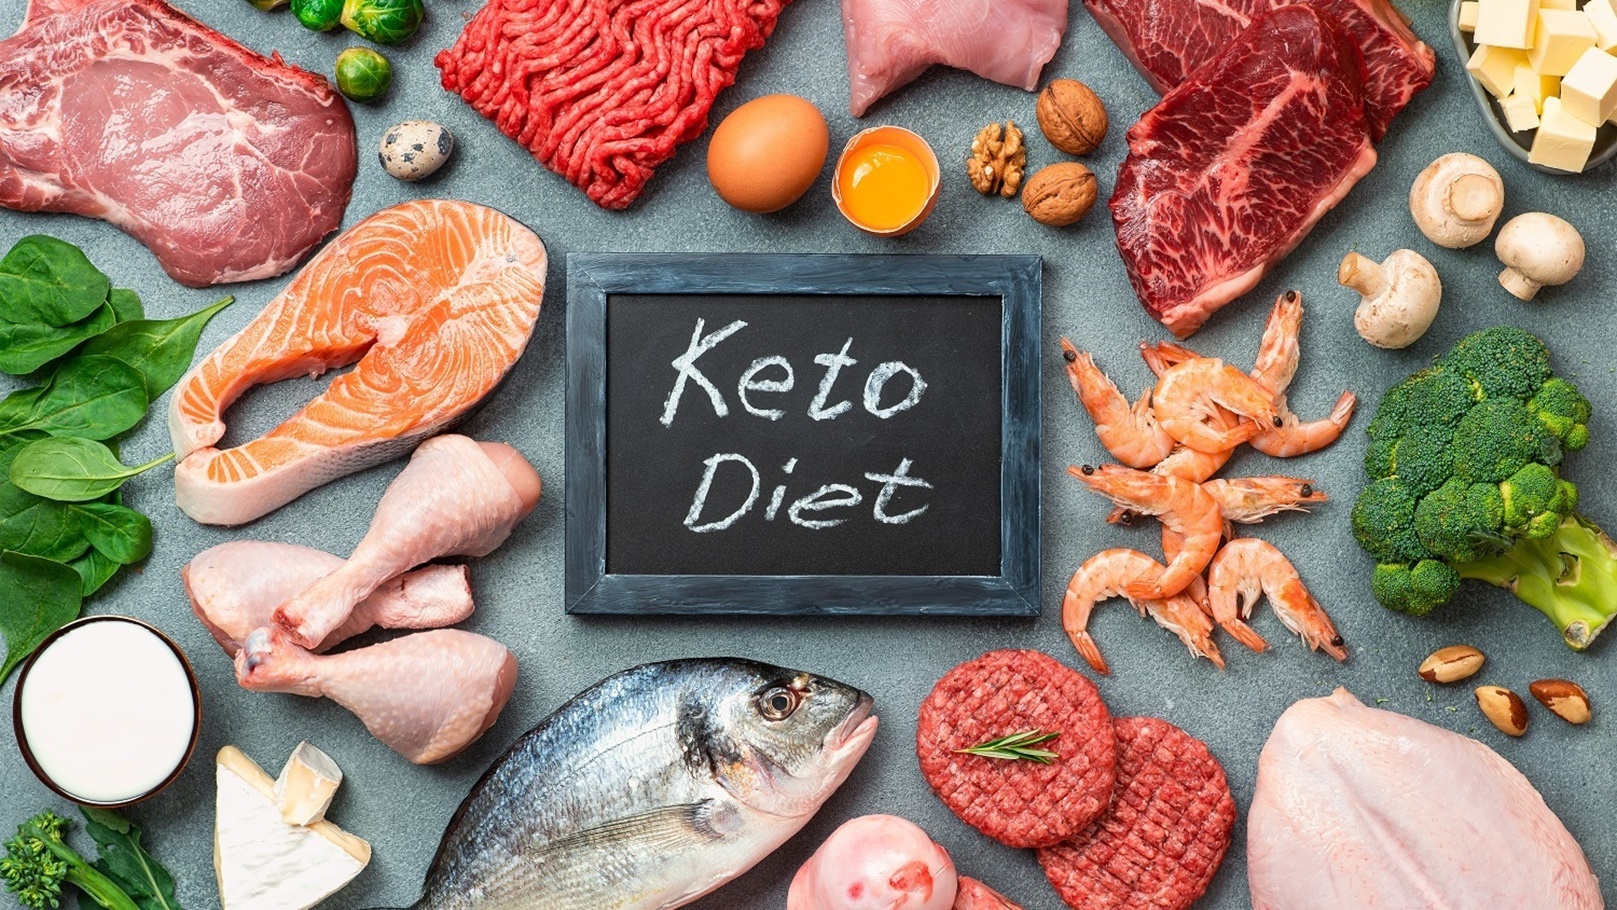 keto-diet-low-carb-concept-top-view-2021-08-26-19-04-01-utc